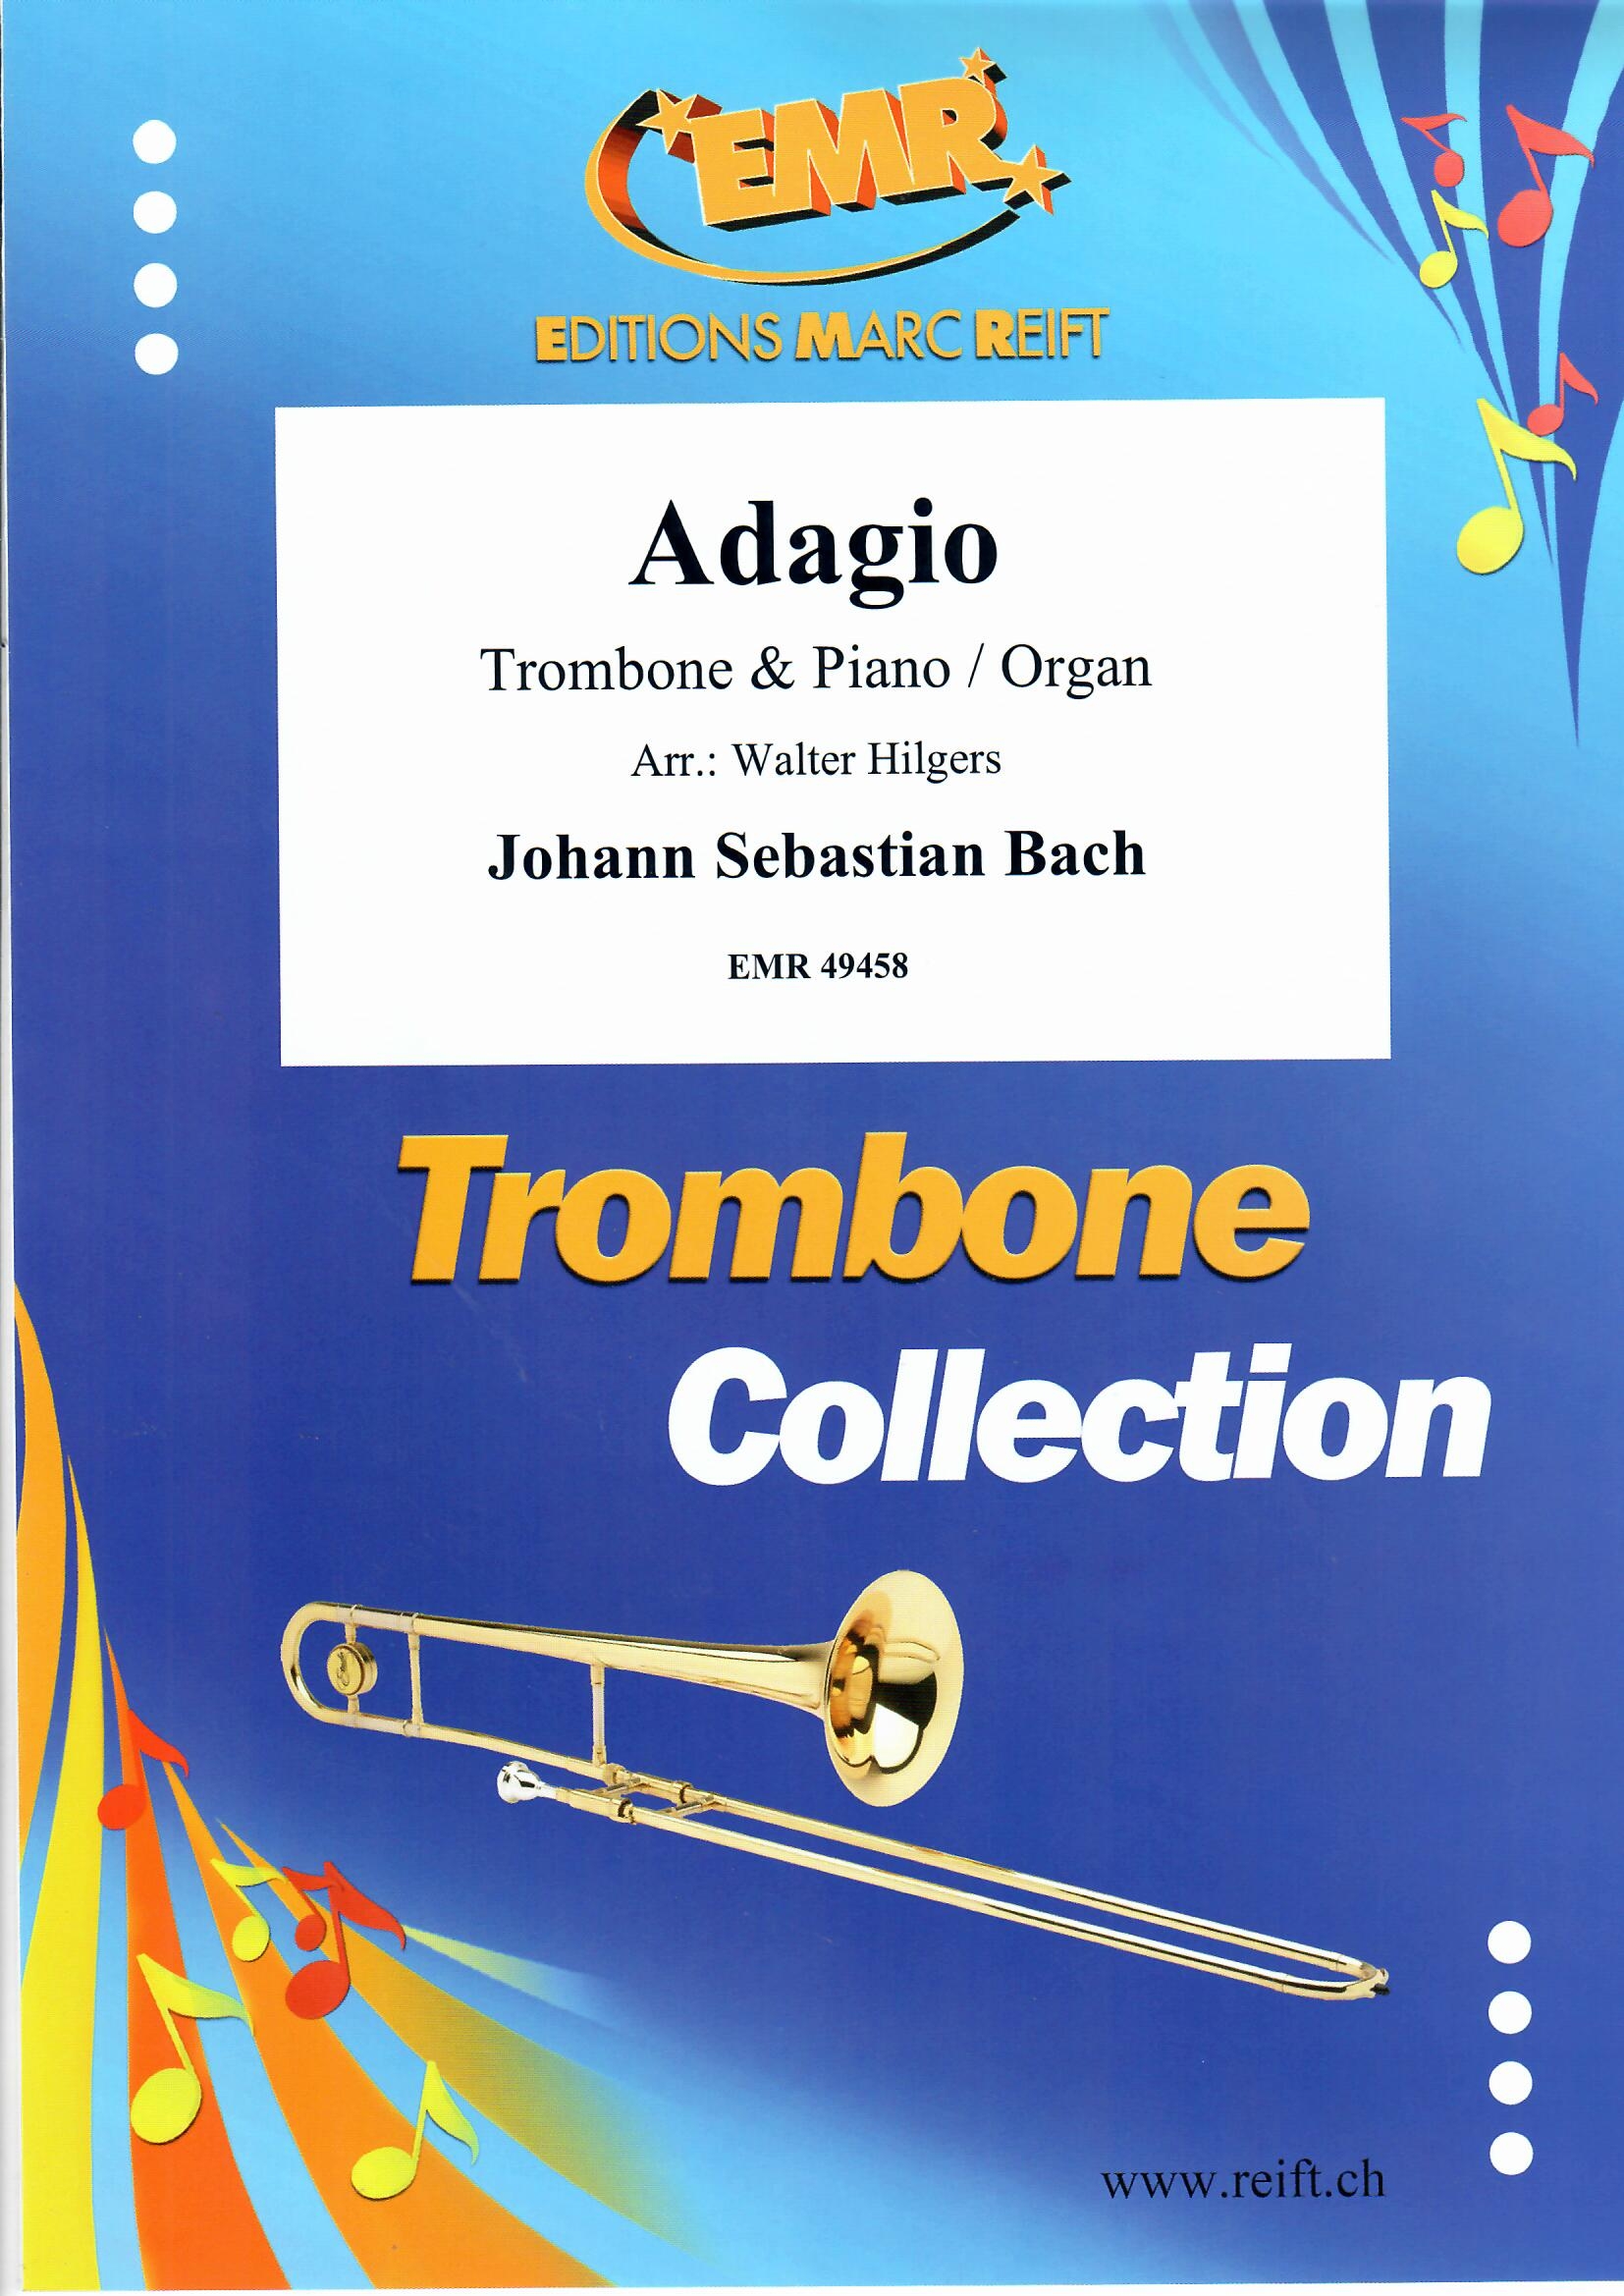 ADAGIO - Trombone & Piano